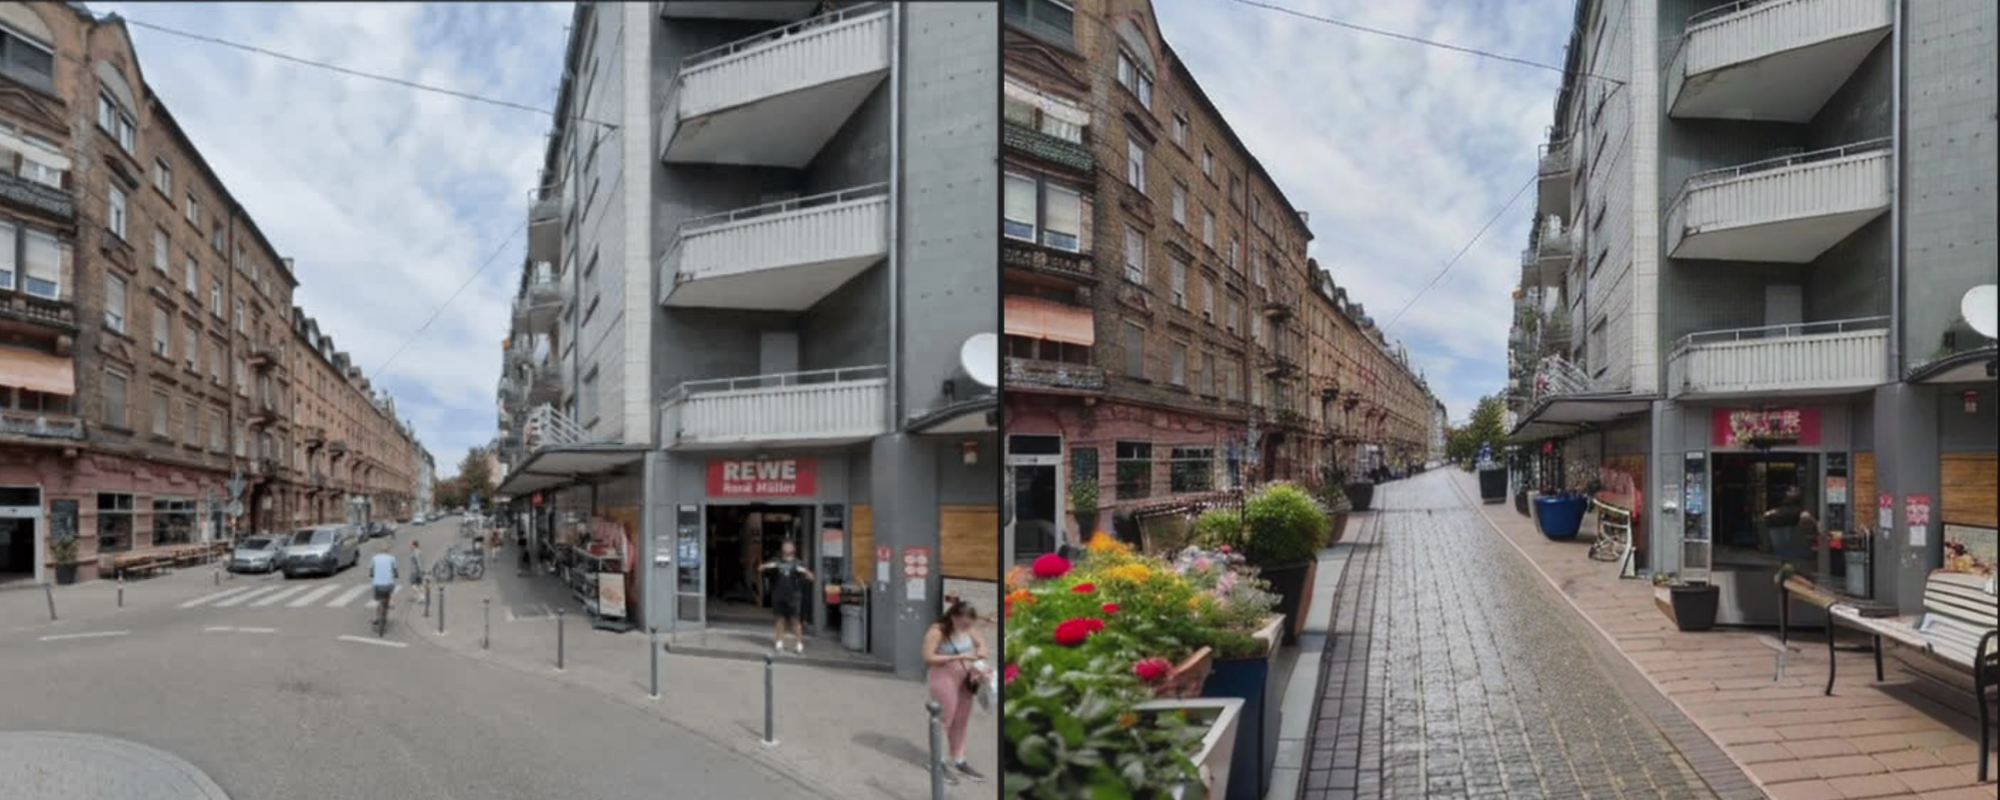 Gegenüberstellung Georg-Friedrich-Straße aktuell zu Vision für Georg-Friedrich-Straße